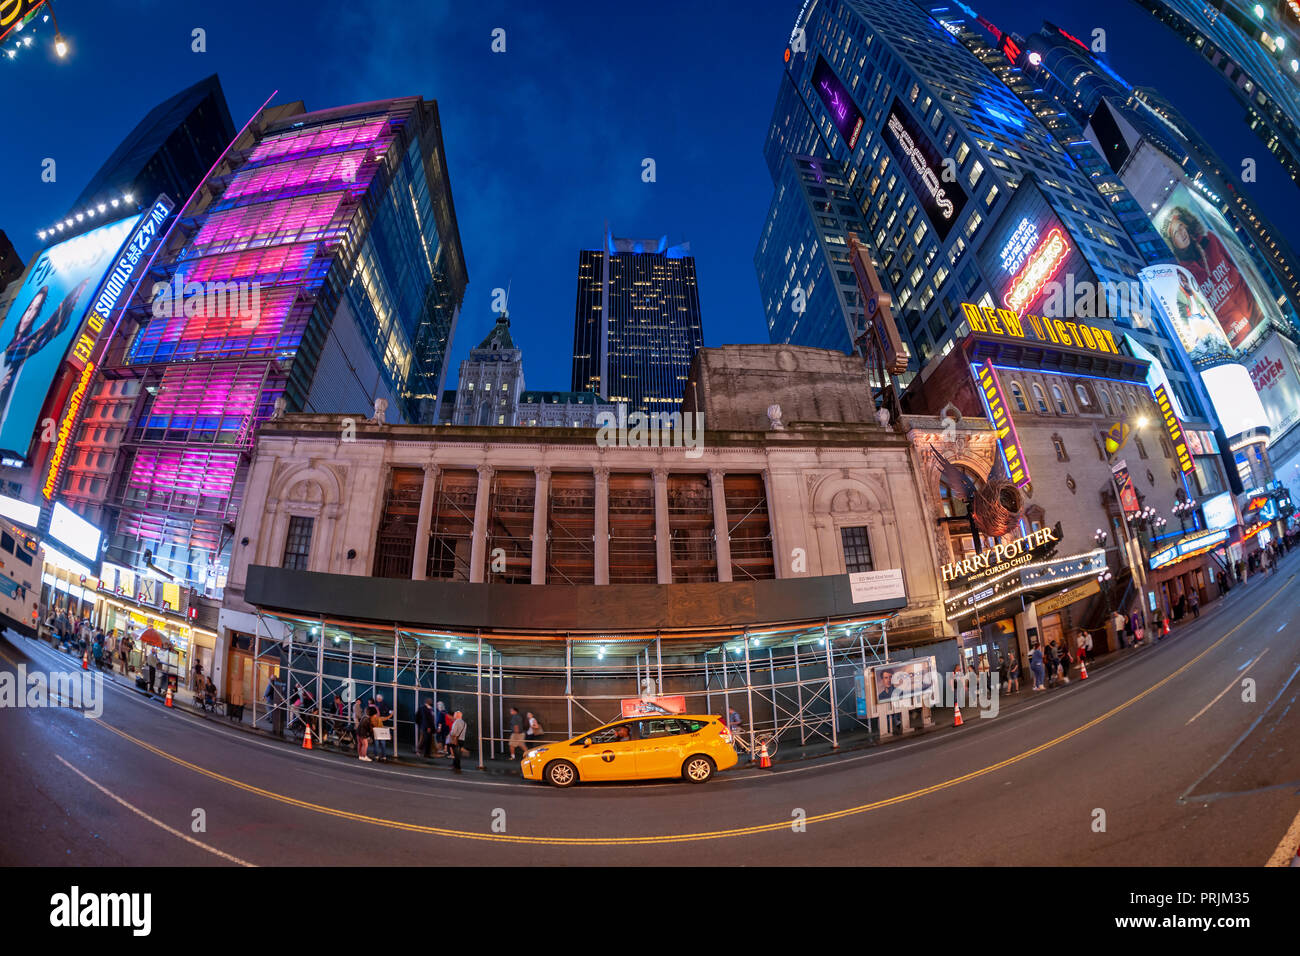 Die lange leerstehende eingerüstet Times Square Theater an der West 42nd Street ist am Dienstag, 18. September 2018. Die Stillman Entwicklung internationales Unternehmen angekündigt, die 1920 Theater für den Einzelhandel zu entwickeln. Das Theater ist seit 30 Jahren als Entwicklung wuchs um ihn herum. (Â© Richard B. Levine) Stockfoto